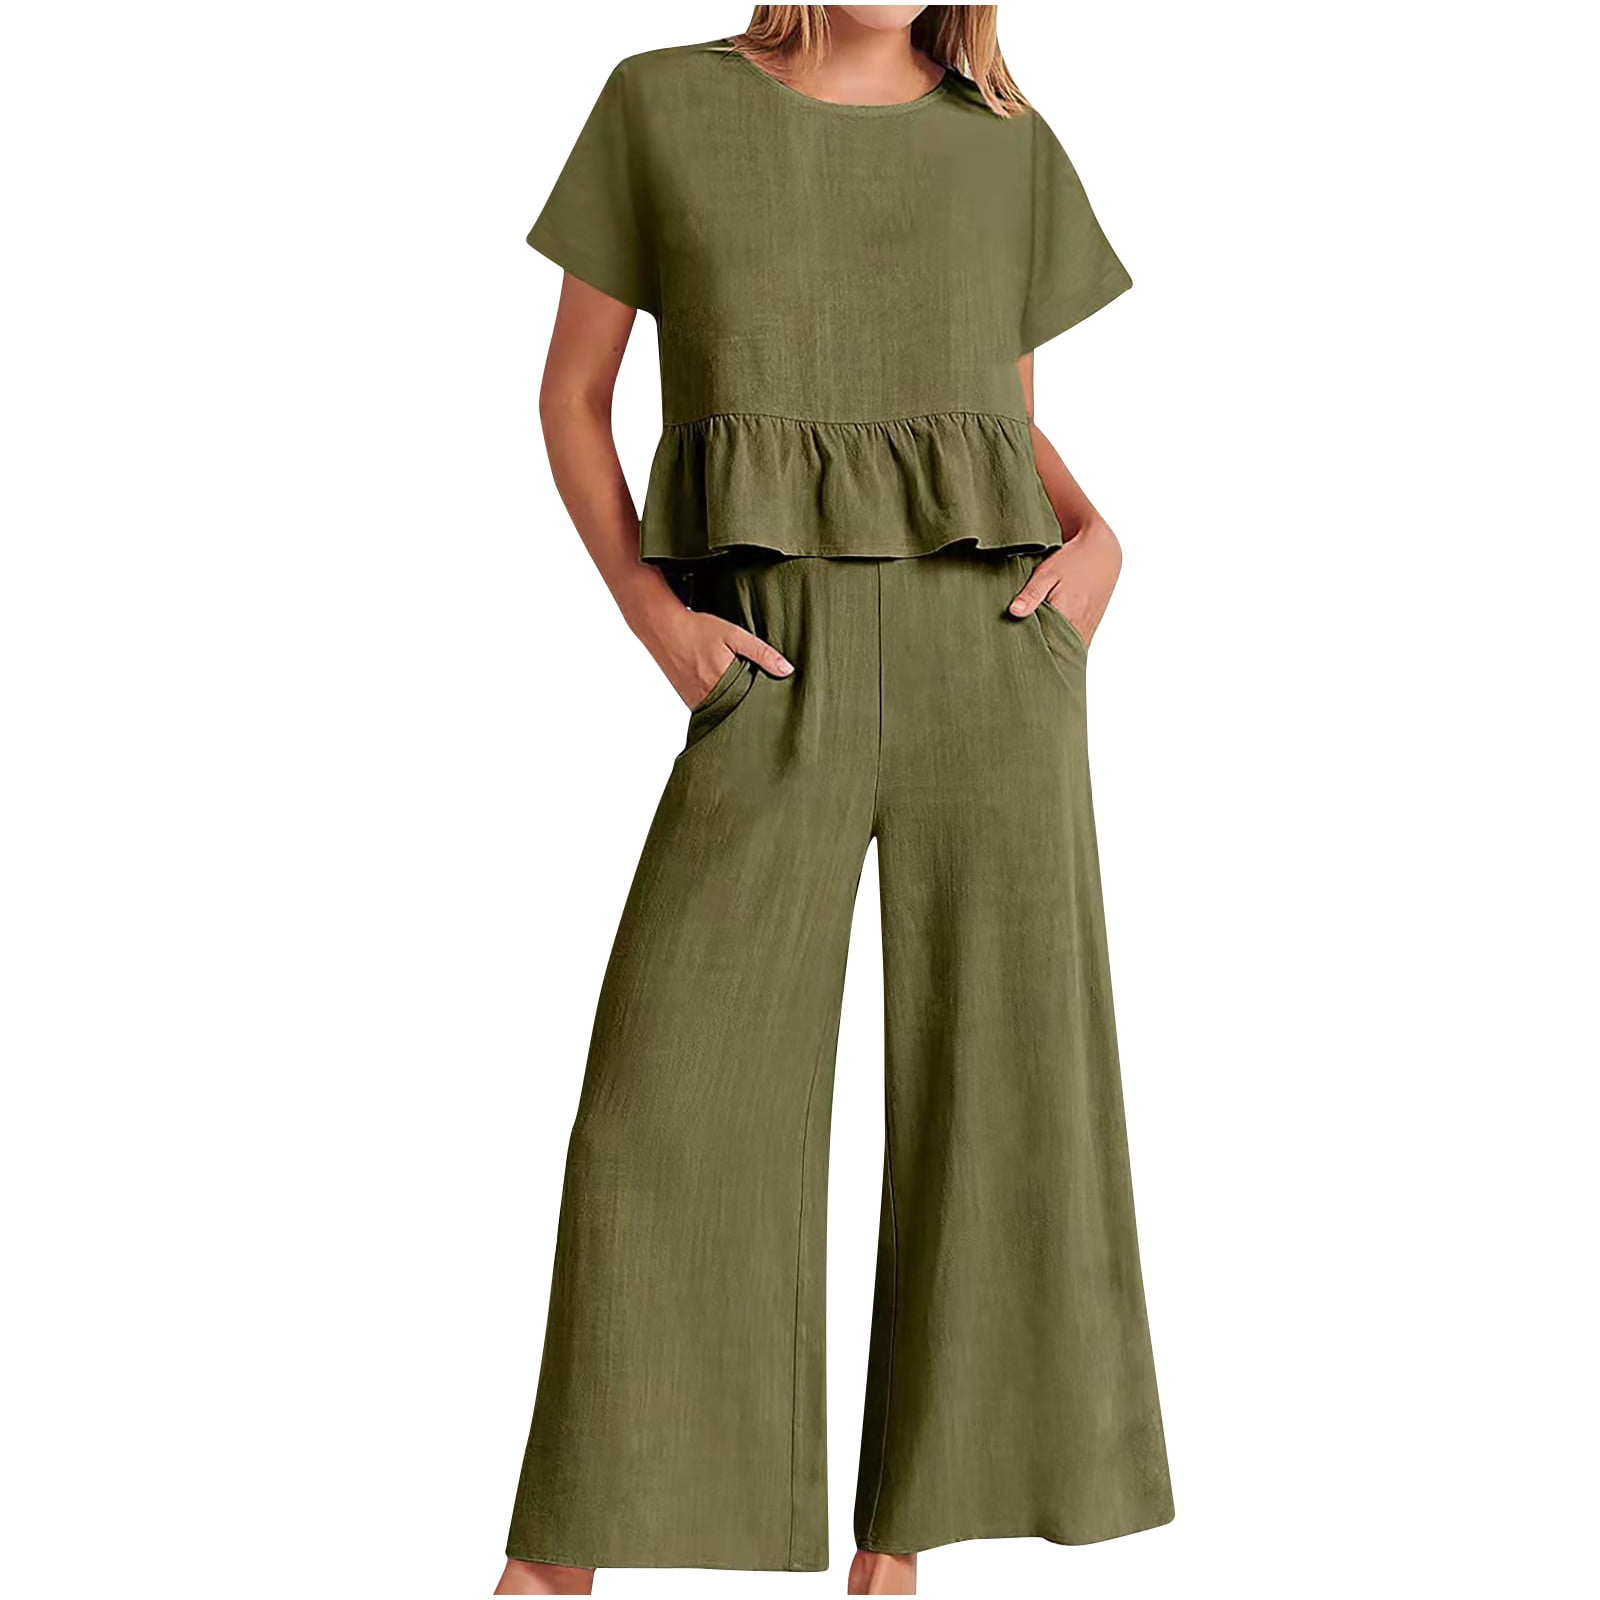 Jsezml Womens Cotton Linen Sets 2 Piece Summer Outfits Elegant